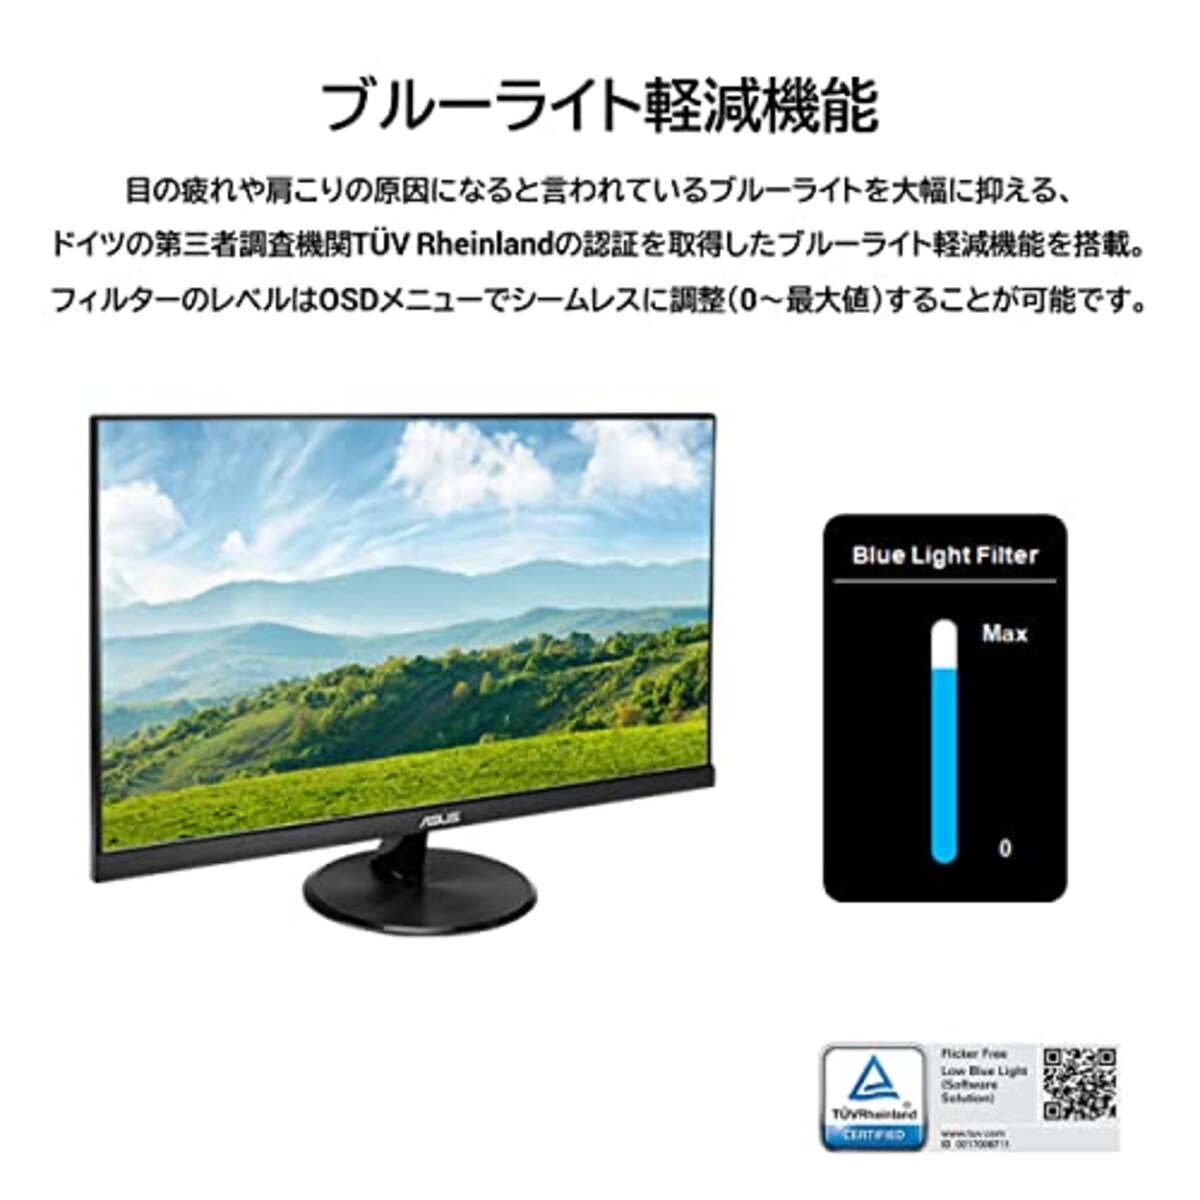  【Amazon.co.jp限定】 ASUS ゲーミングモニター 75Hz 23.8インチ モニター IPS FHD 1ms HDMI1.4(x2) スピーカー VP249HV画像7 